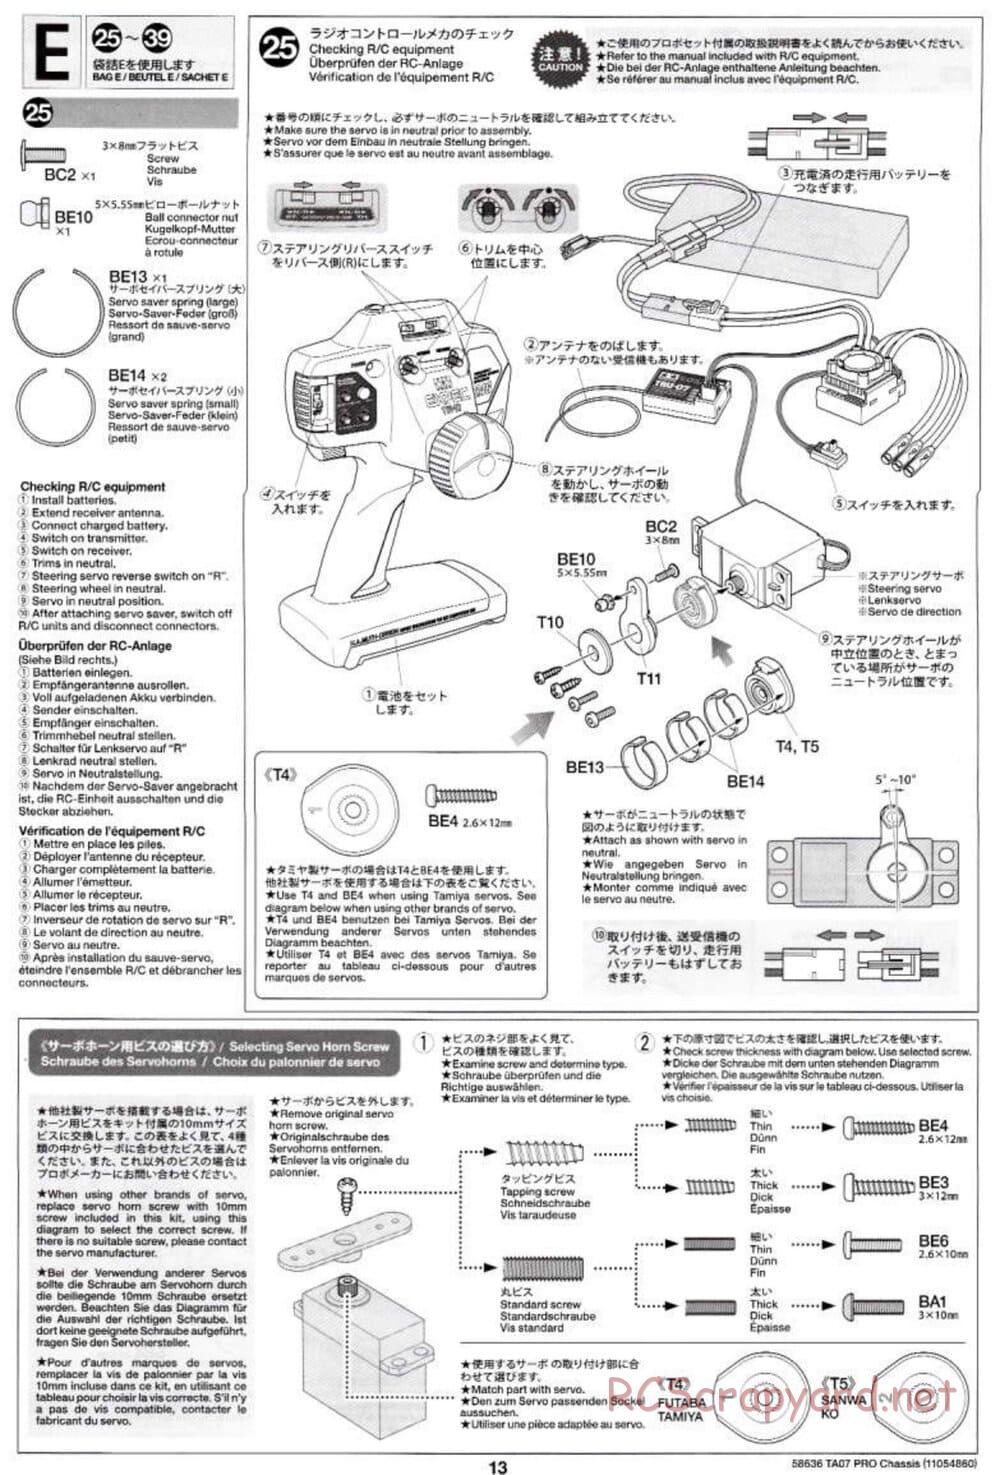 Tamiya - TA07 Pro Chassis - Manual - Page 13